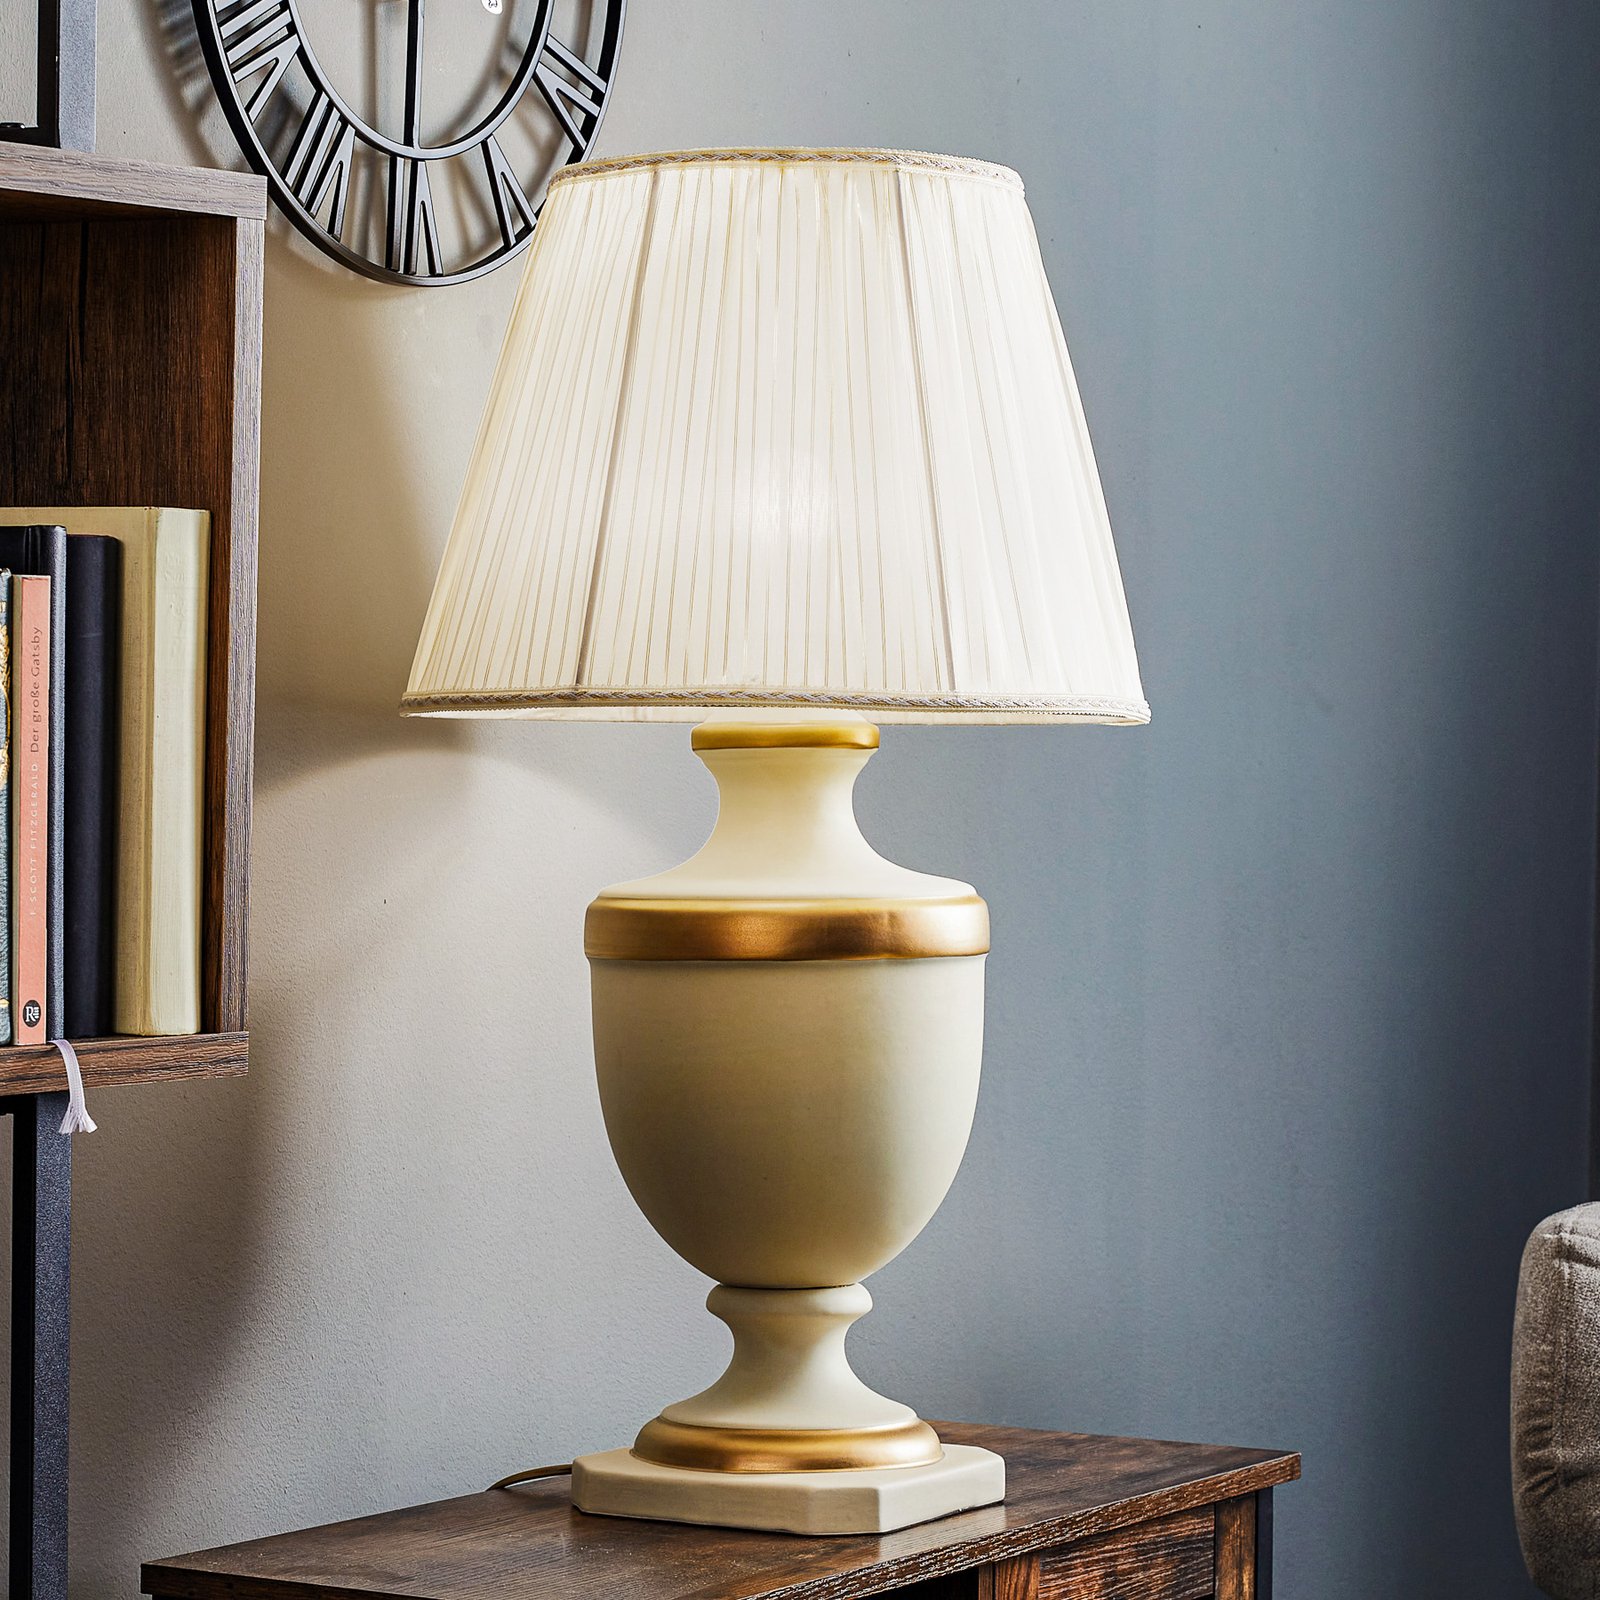 Imperiale bordlampe af keramik, højde 66 cm